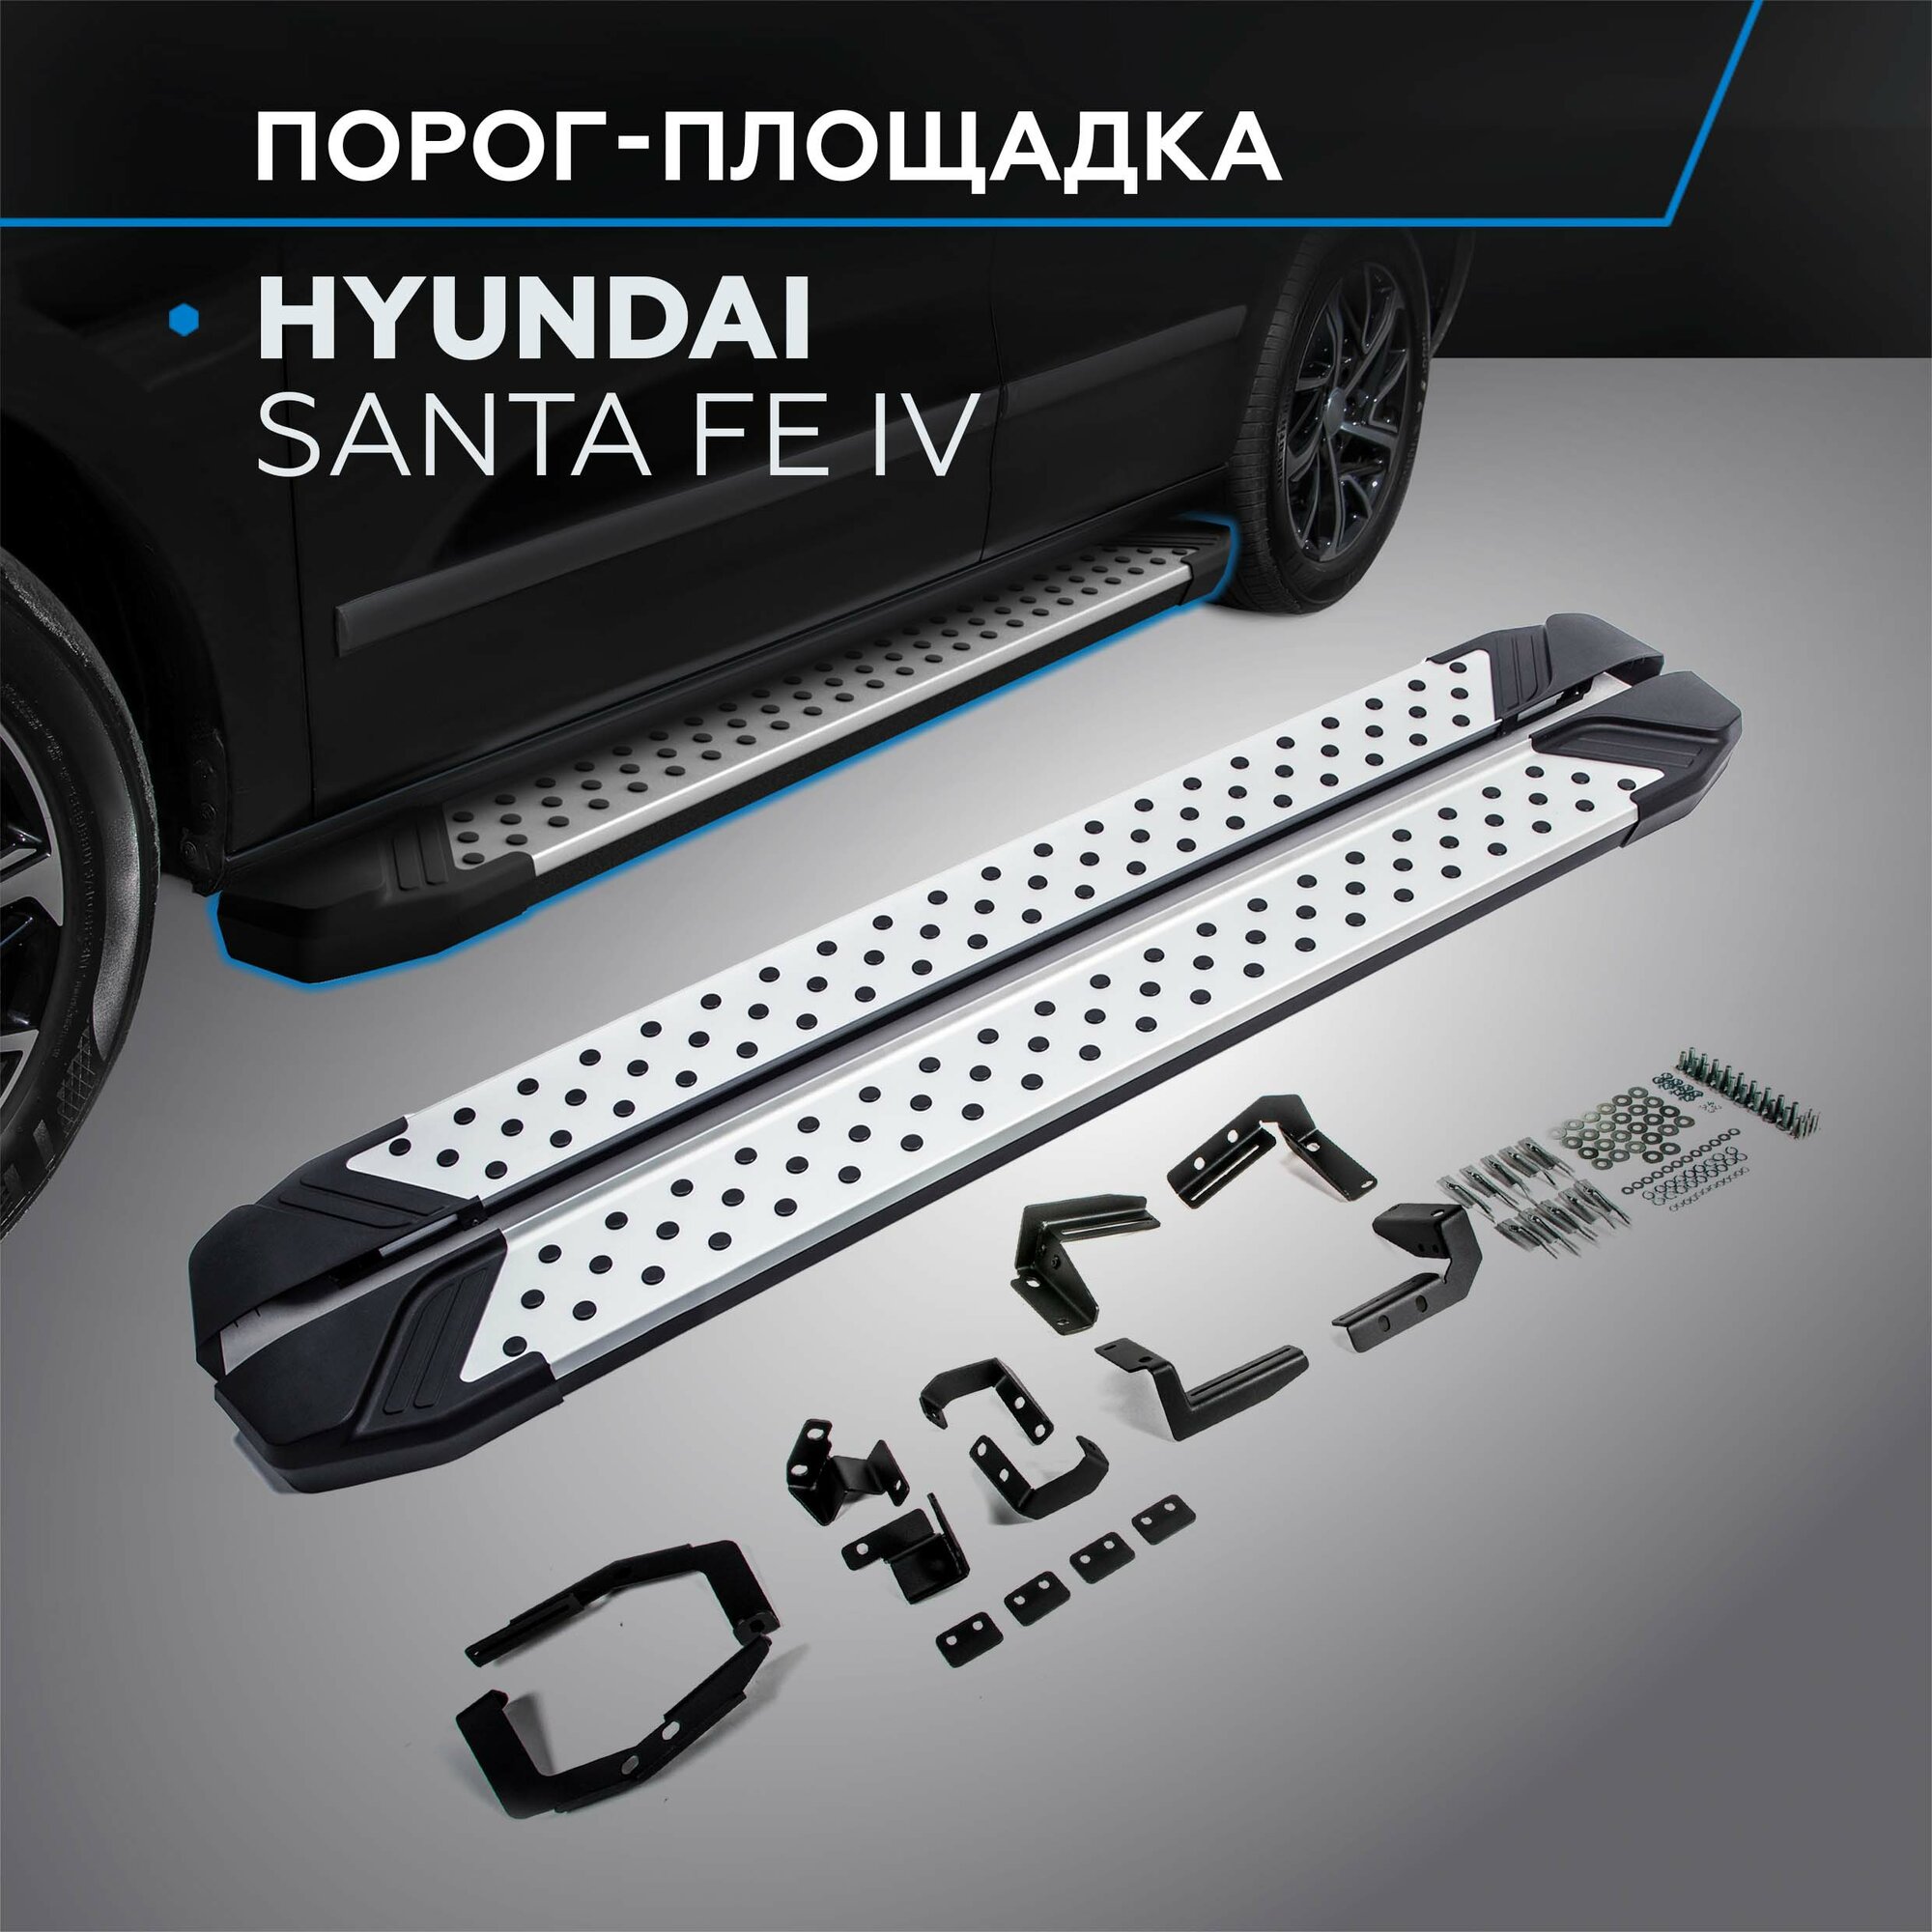 Пороги на автомобиль "Bmw-Style круг" Rival для Hyundai Santa Fe IV 2018-2021, 180 см, 2 шт, алюминий, D180AL.2307.1